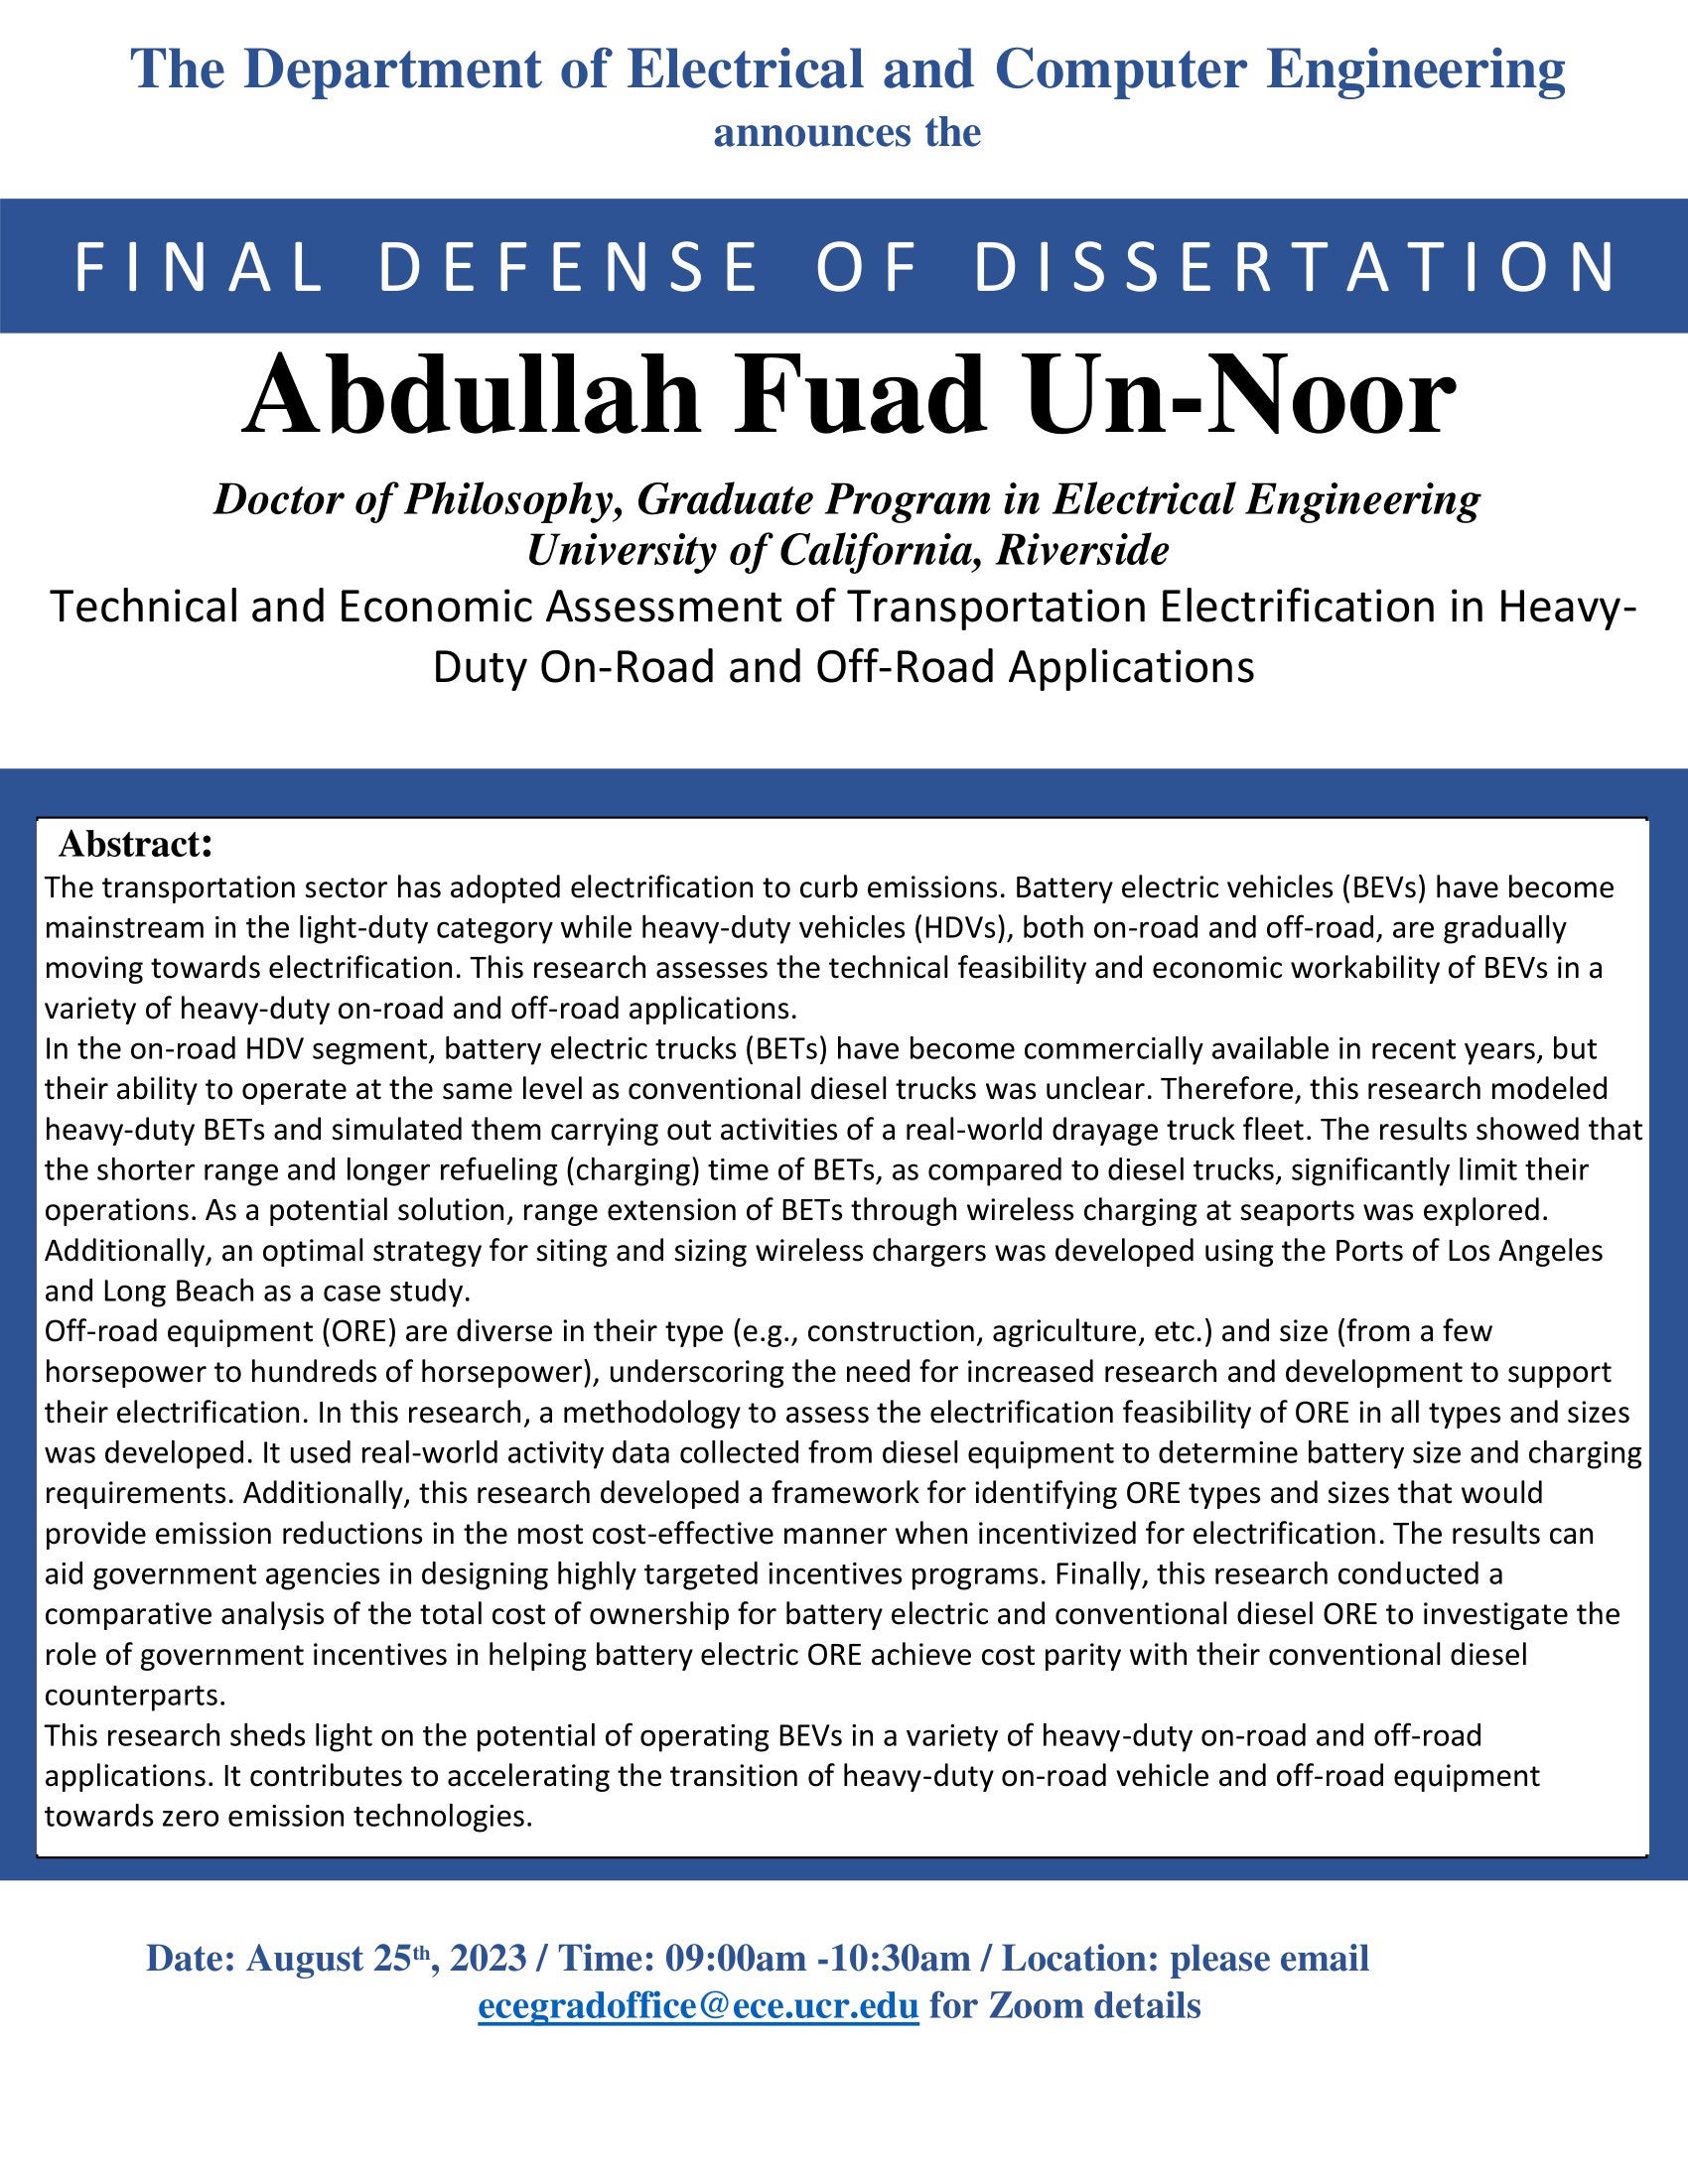 Abdullah Fuad Un-Noor